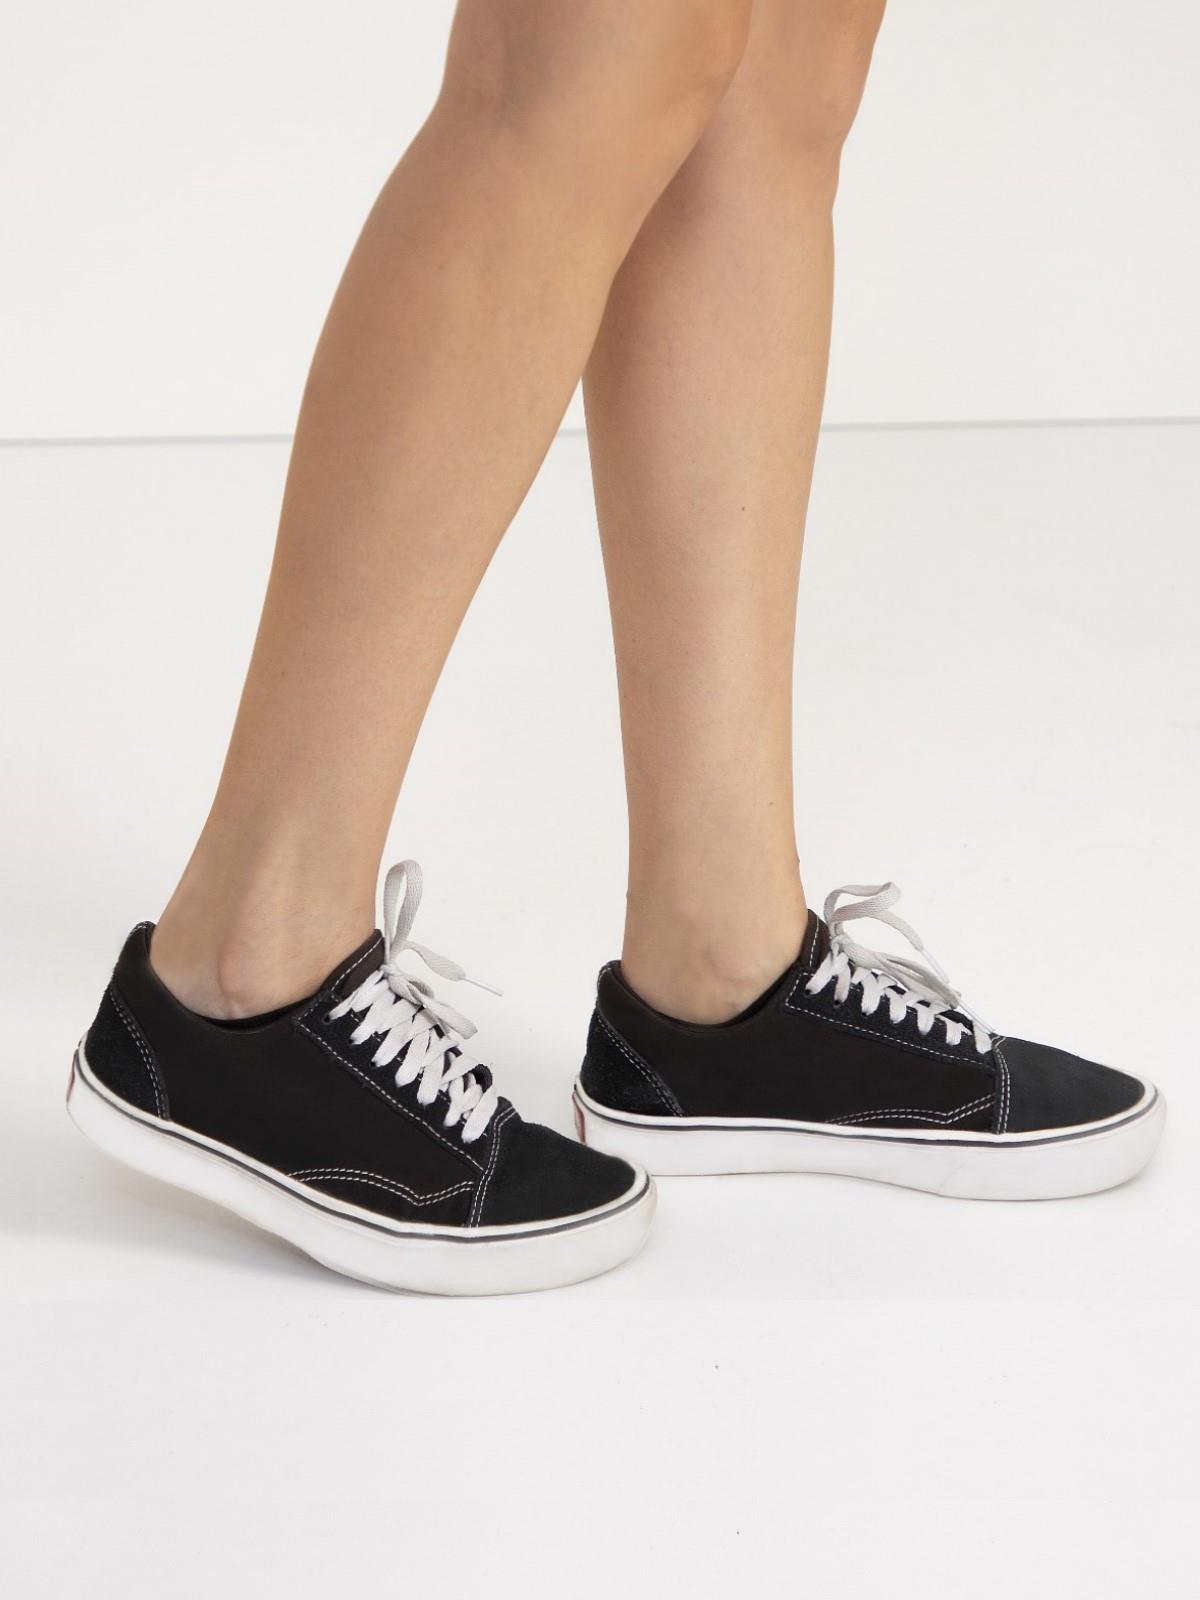 Moodligo Kadın 6'lı Premium Pamuk Görünmez Spor Çorap (Babet Çorap) - 3 Siyah 3 Beyaz - Kutulu